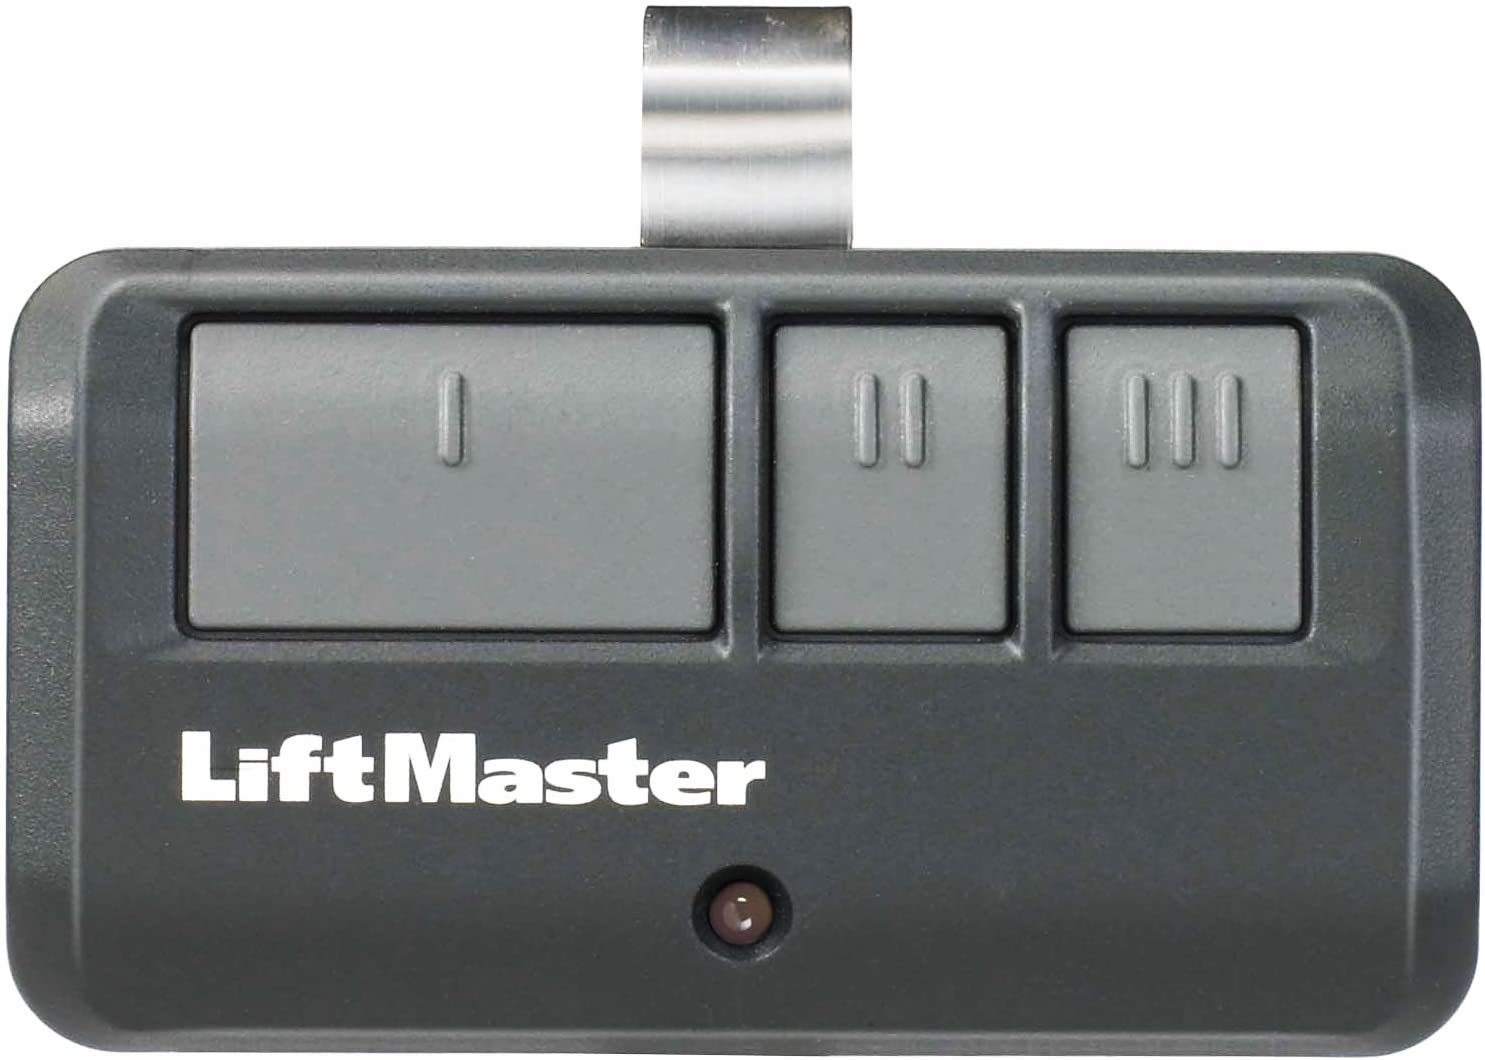 How To Program LiftMaster Garage Door Opener Remote